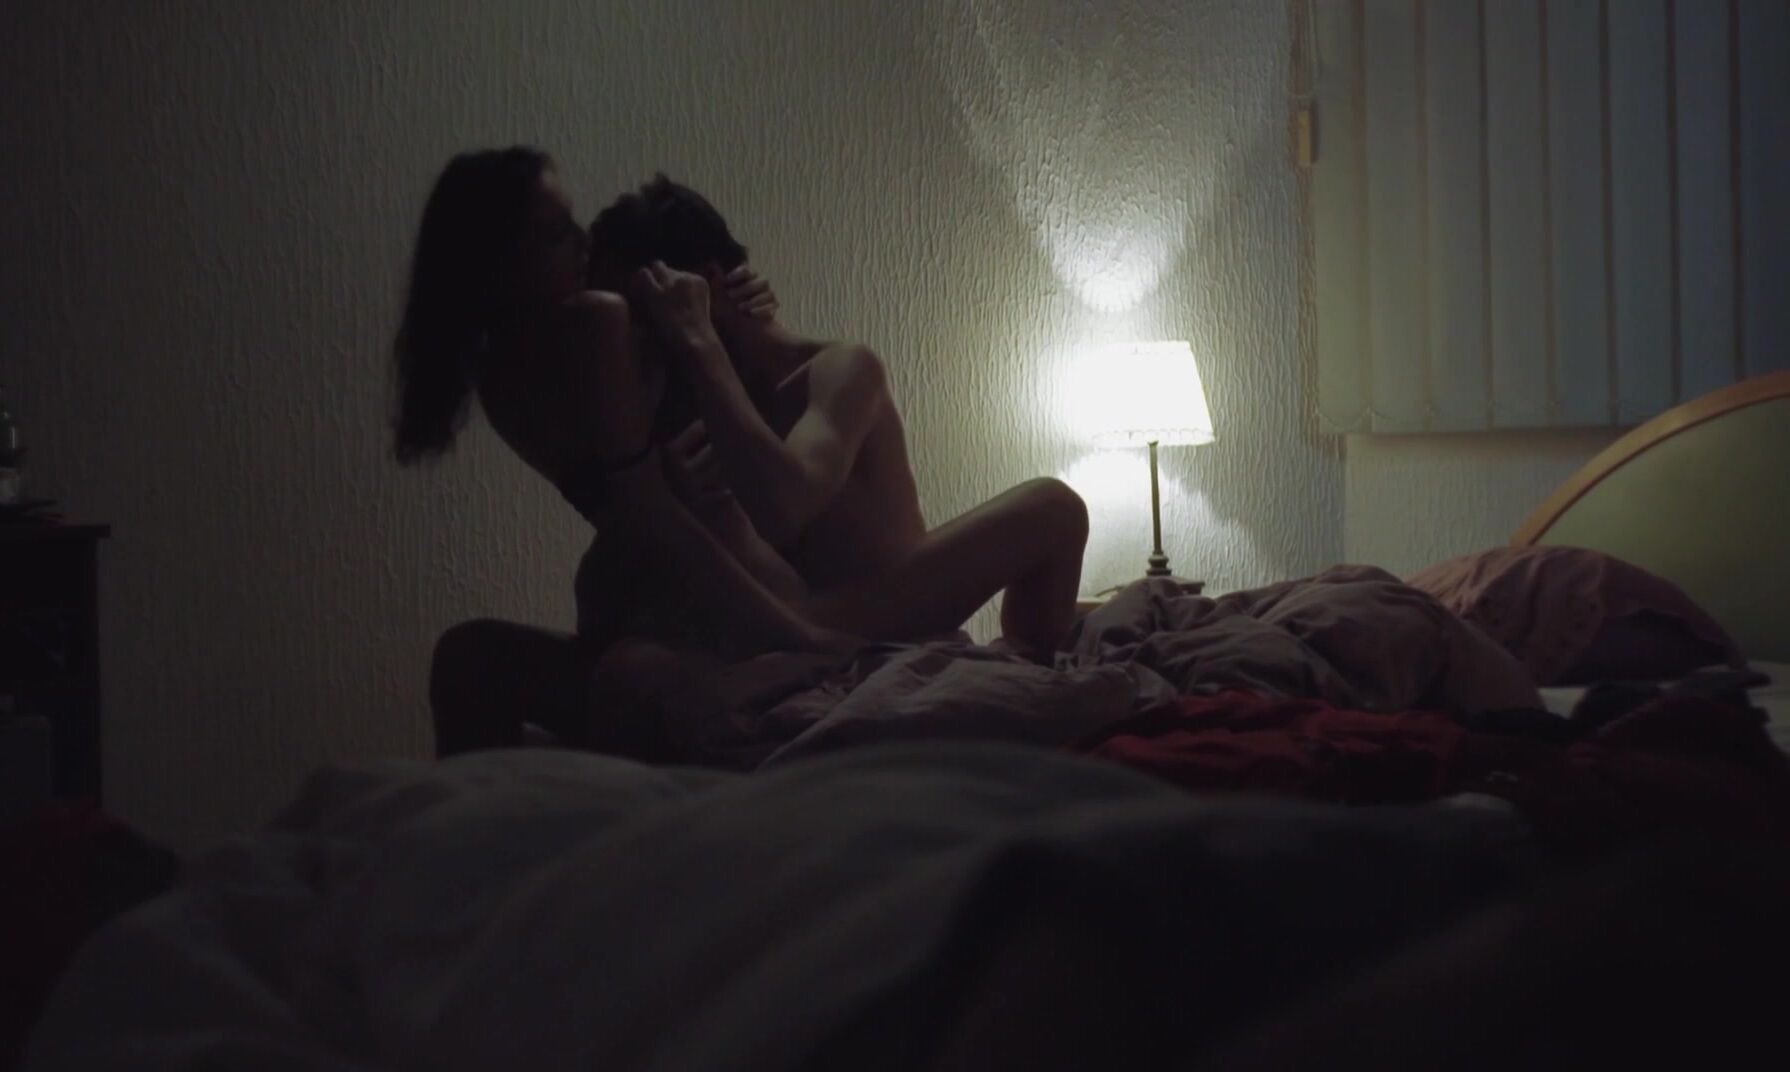 European Actress sex scenes from Guzva (2019) - Gordana Djokic, etc. Morazzia